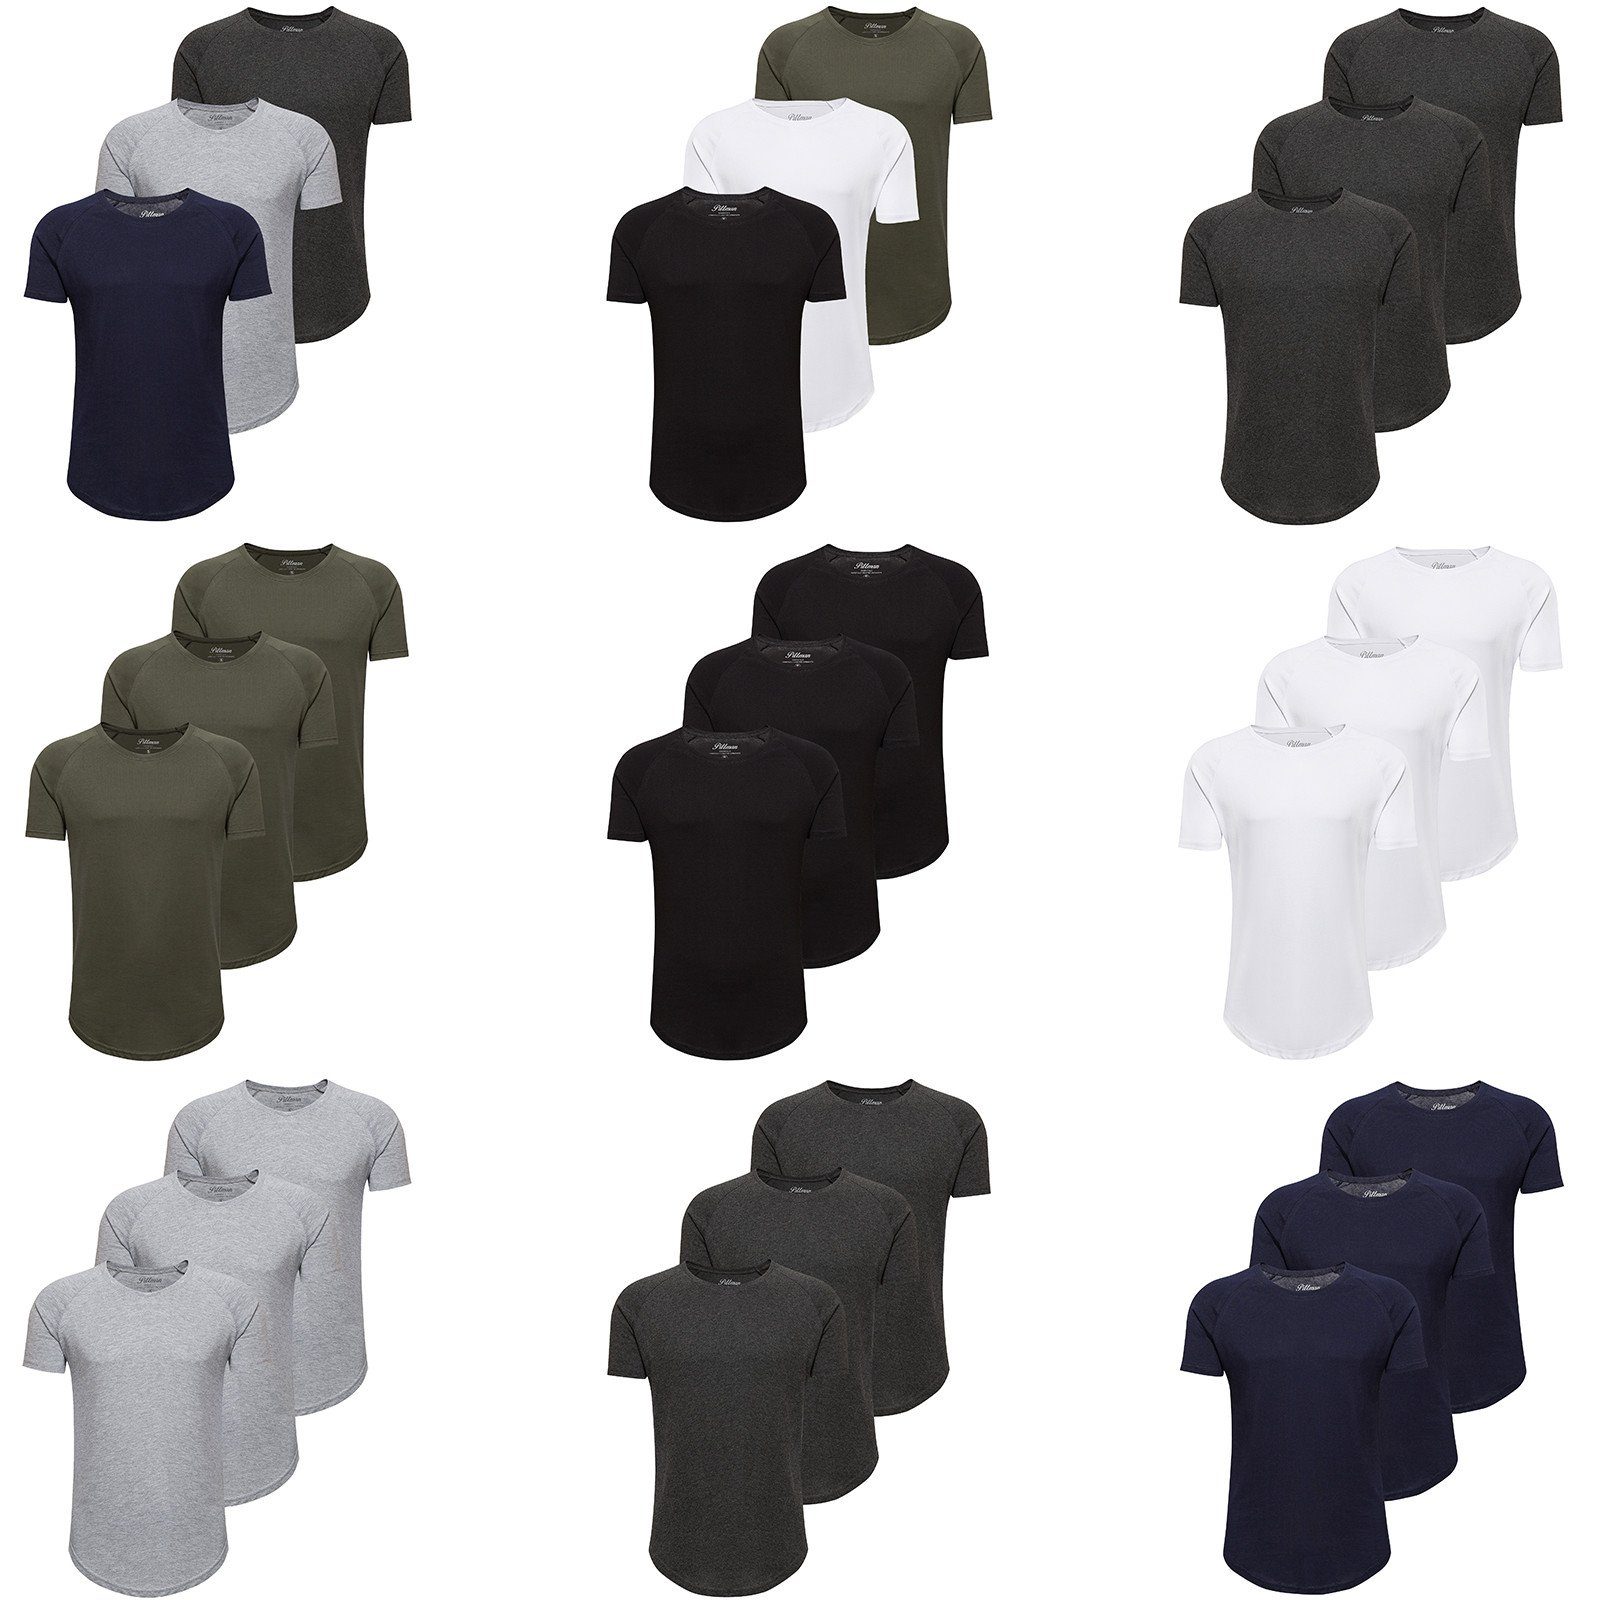 Pittman T-Shirt 3-Pack Herren 1106013) Finn 3er-Pack) T-Shirt (Set, Oversize T-Shirt Rundhals White Weiß (Bright